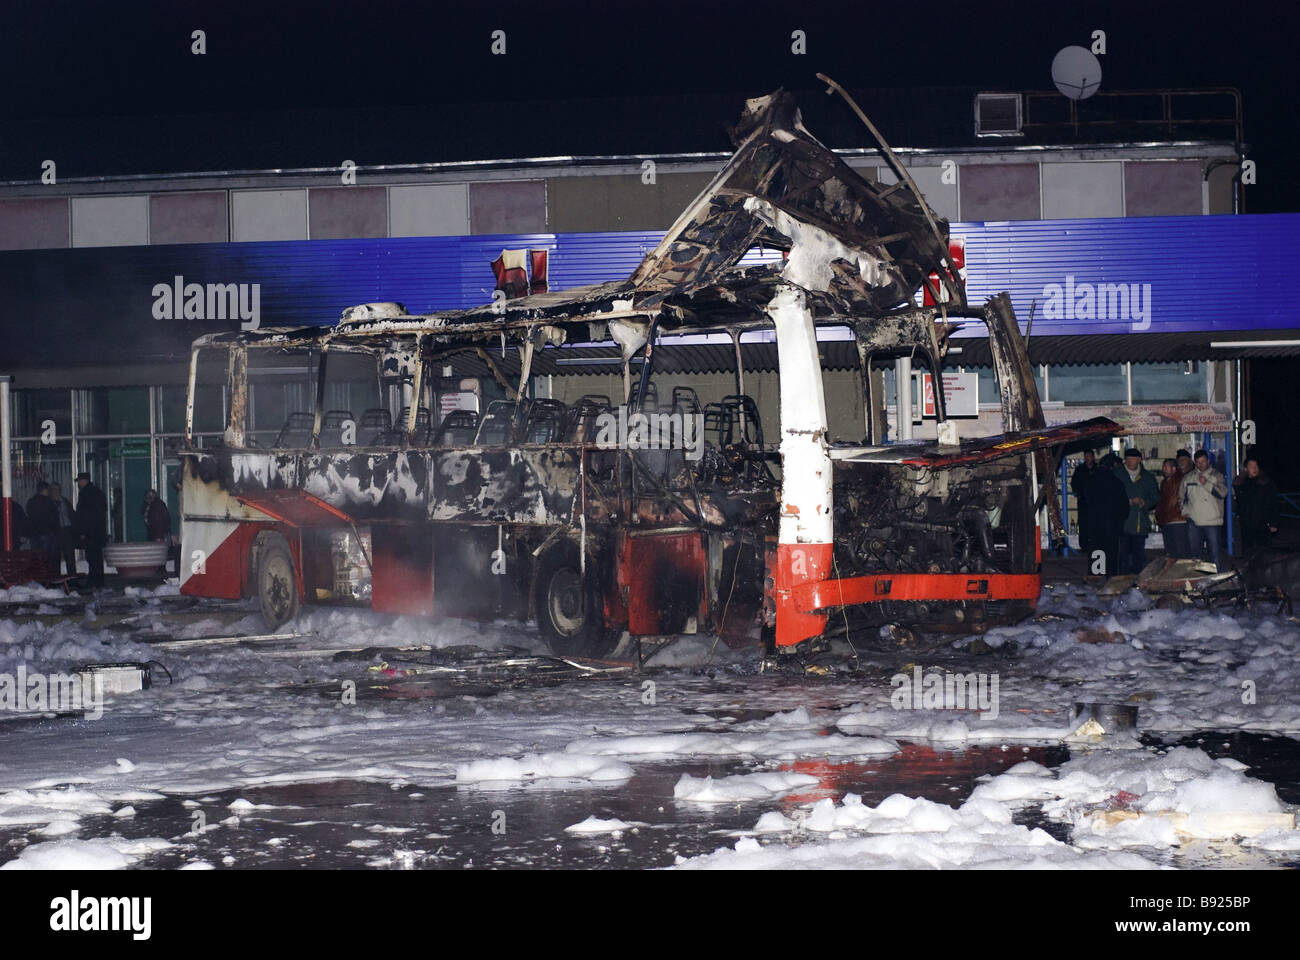 5 декабря 2007. Взрыв автобуса в Нальчике 1996. Нальчик 28 июня 1996 взрыв автобуса. Взрыв автобуса в Невинномысске 2007.